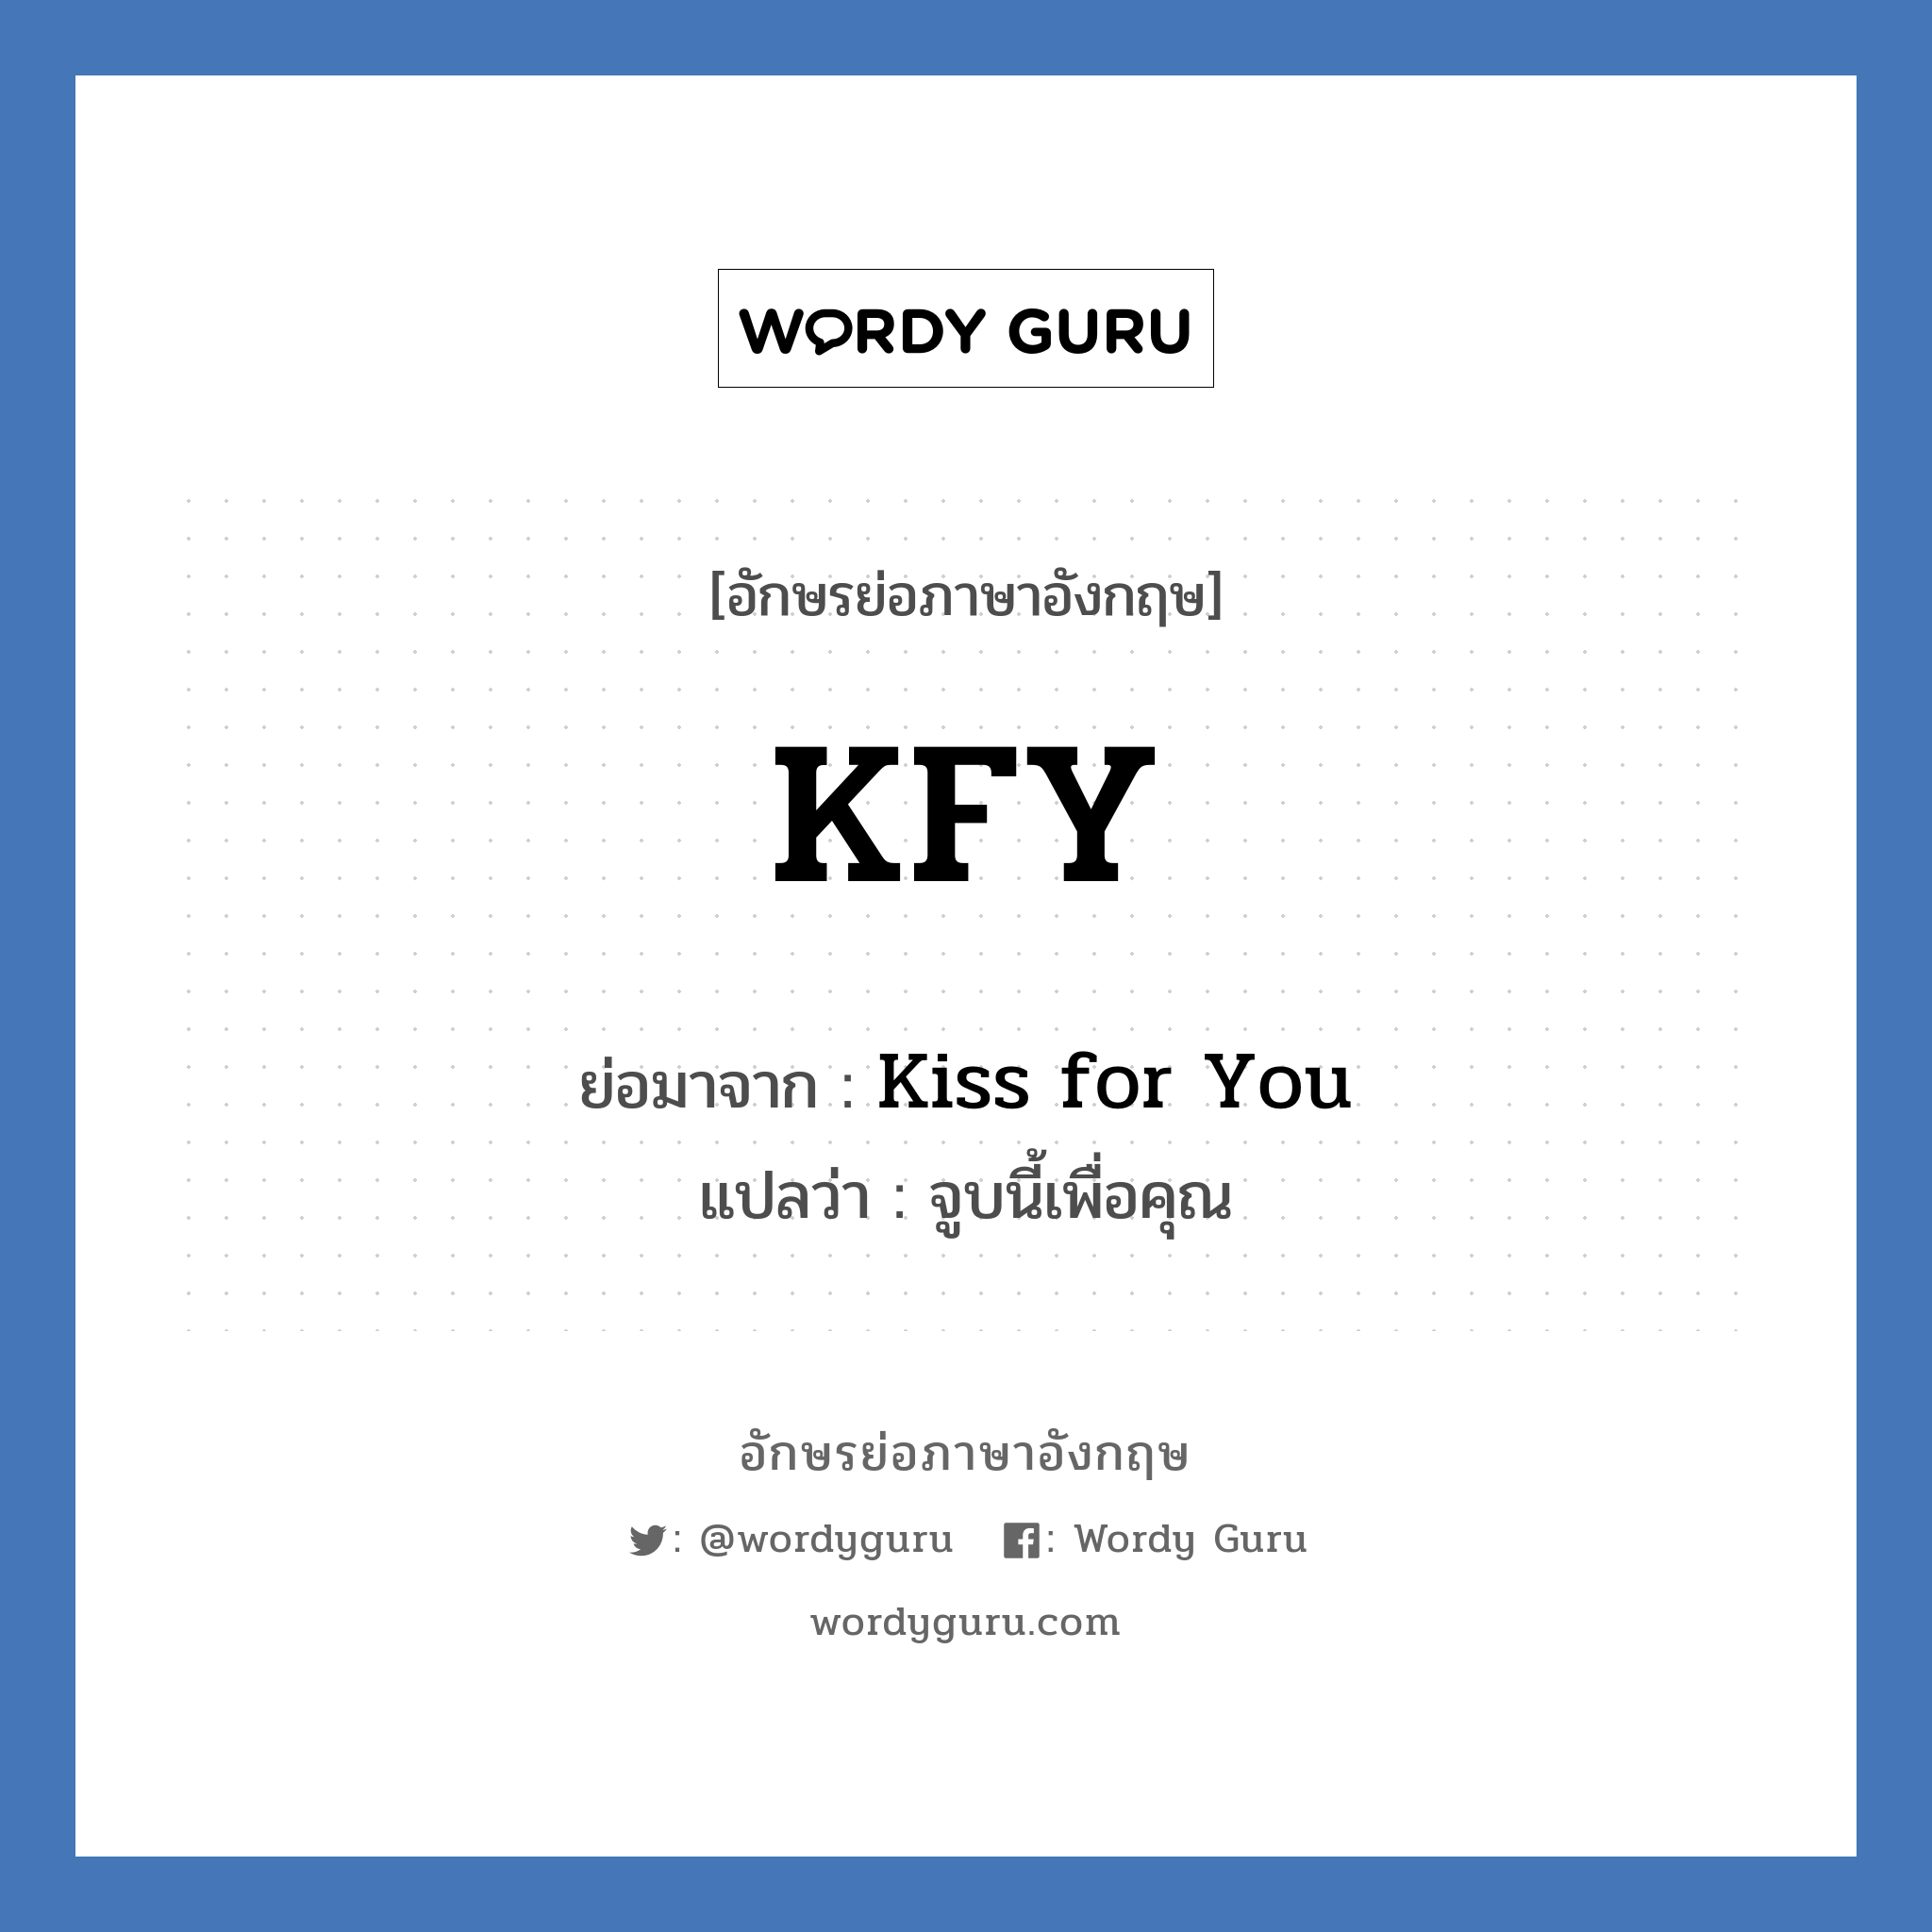 Kiss for You คำย่อคือ? แปลว่า?, อักษรย่อภาษาอังกฤษ Kiss for You ย่อมาจาก KFY แปลว่า จูบนี้เพื่อคุณ